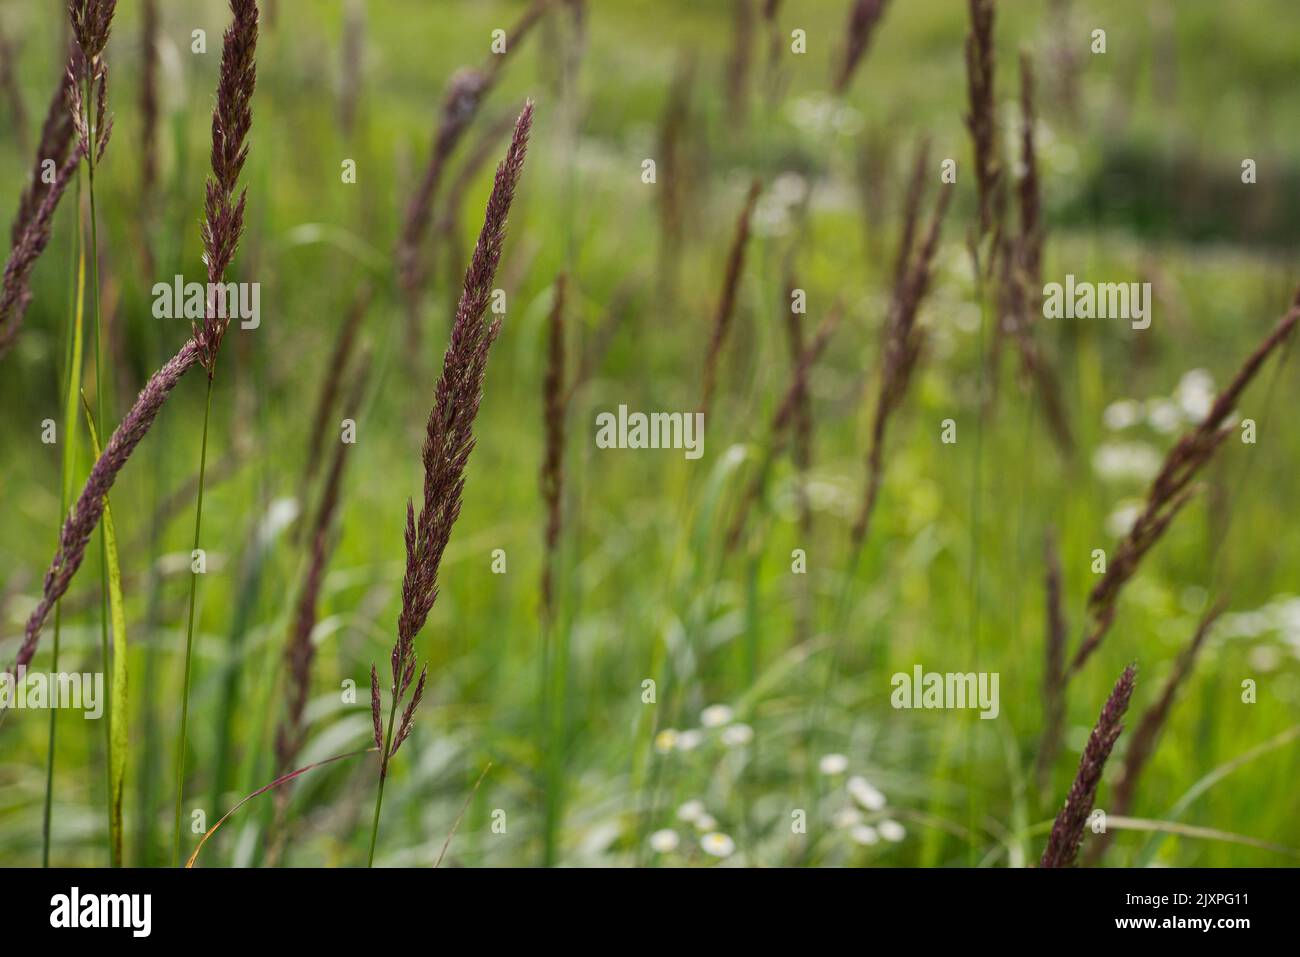 Nahaufnahme von langem Gras auf einer Wiese im Sommer auf Makroebene. Konzept für wild, frei, Glückseligkeit, Frieden, Ruhe Stockfoto